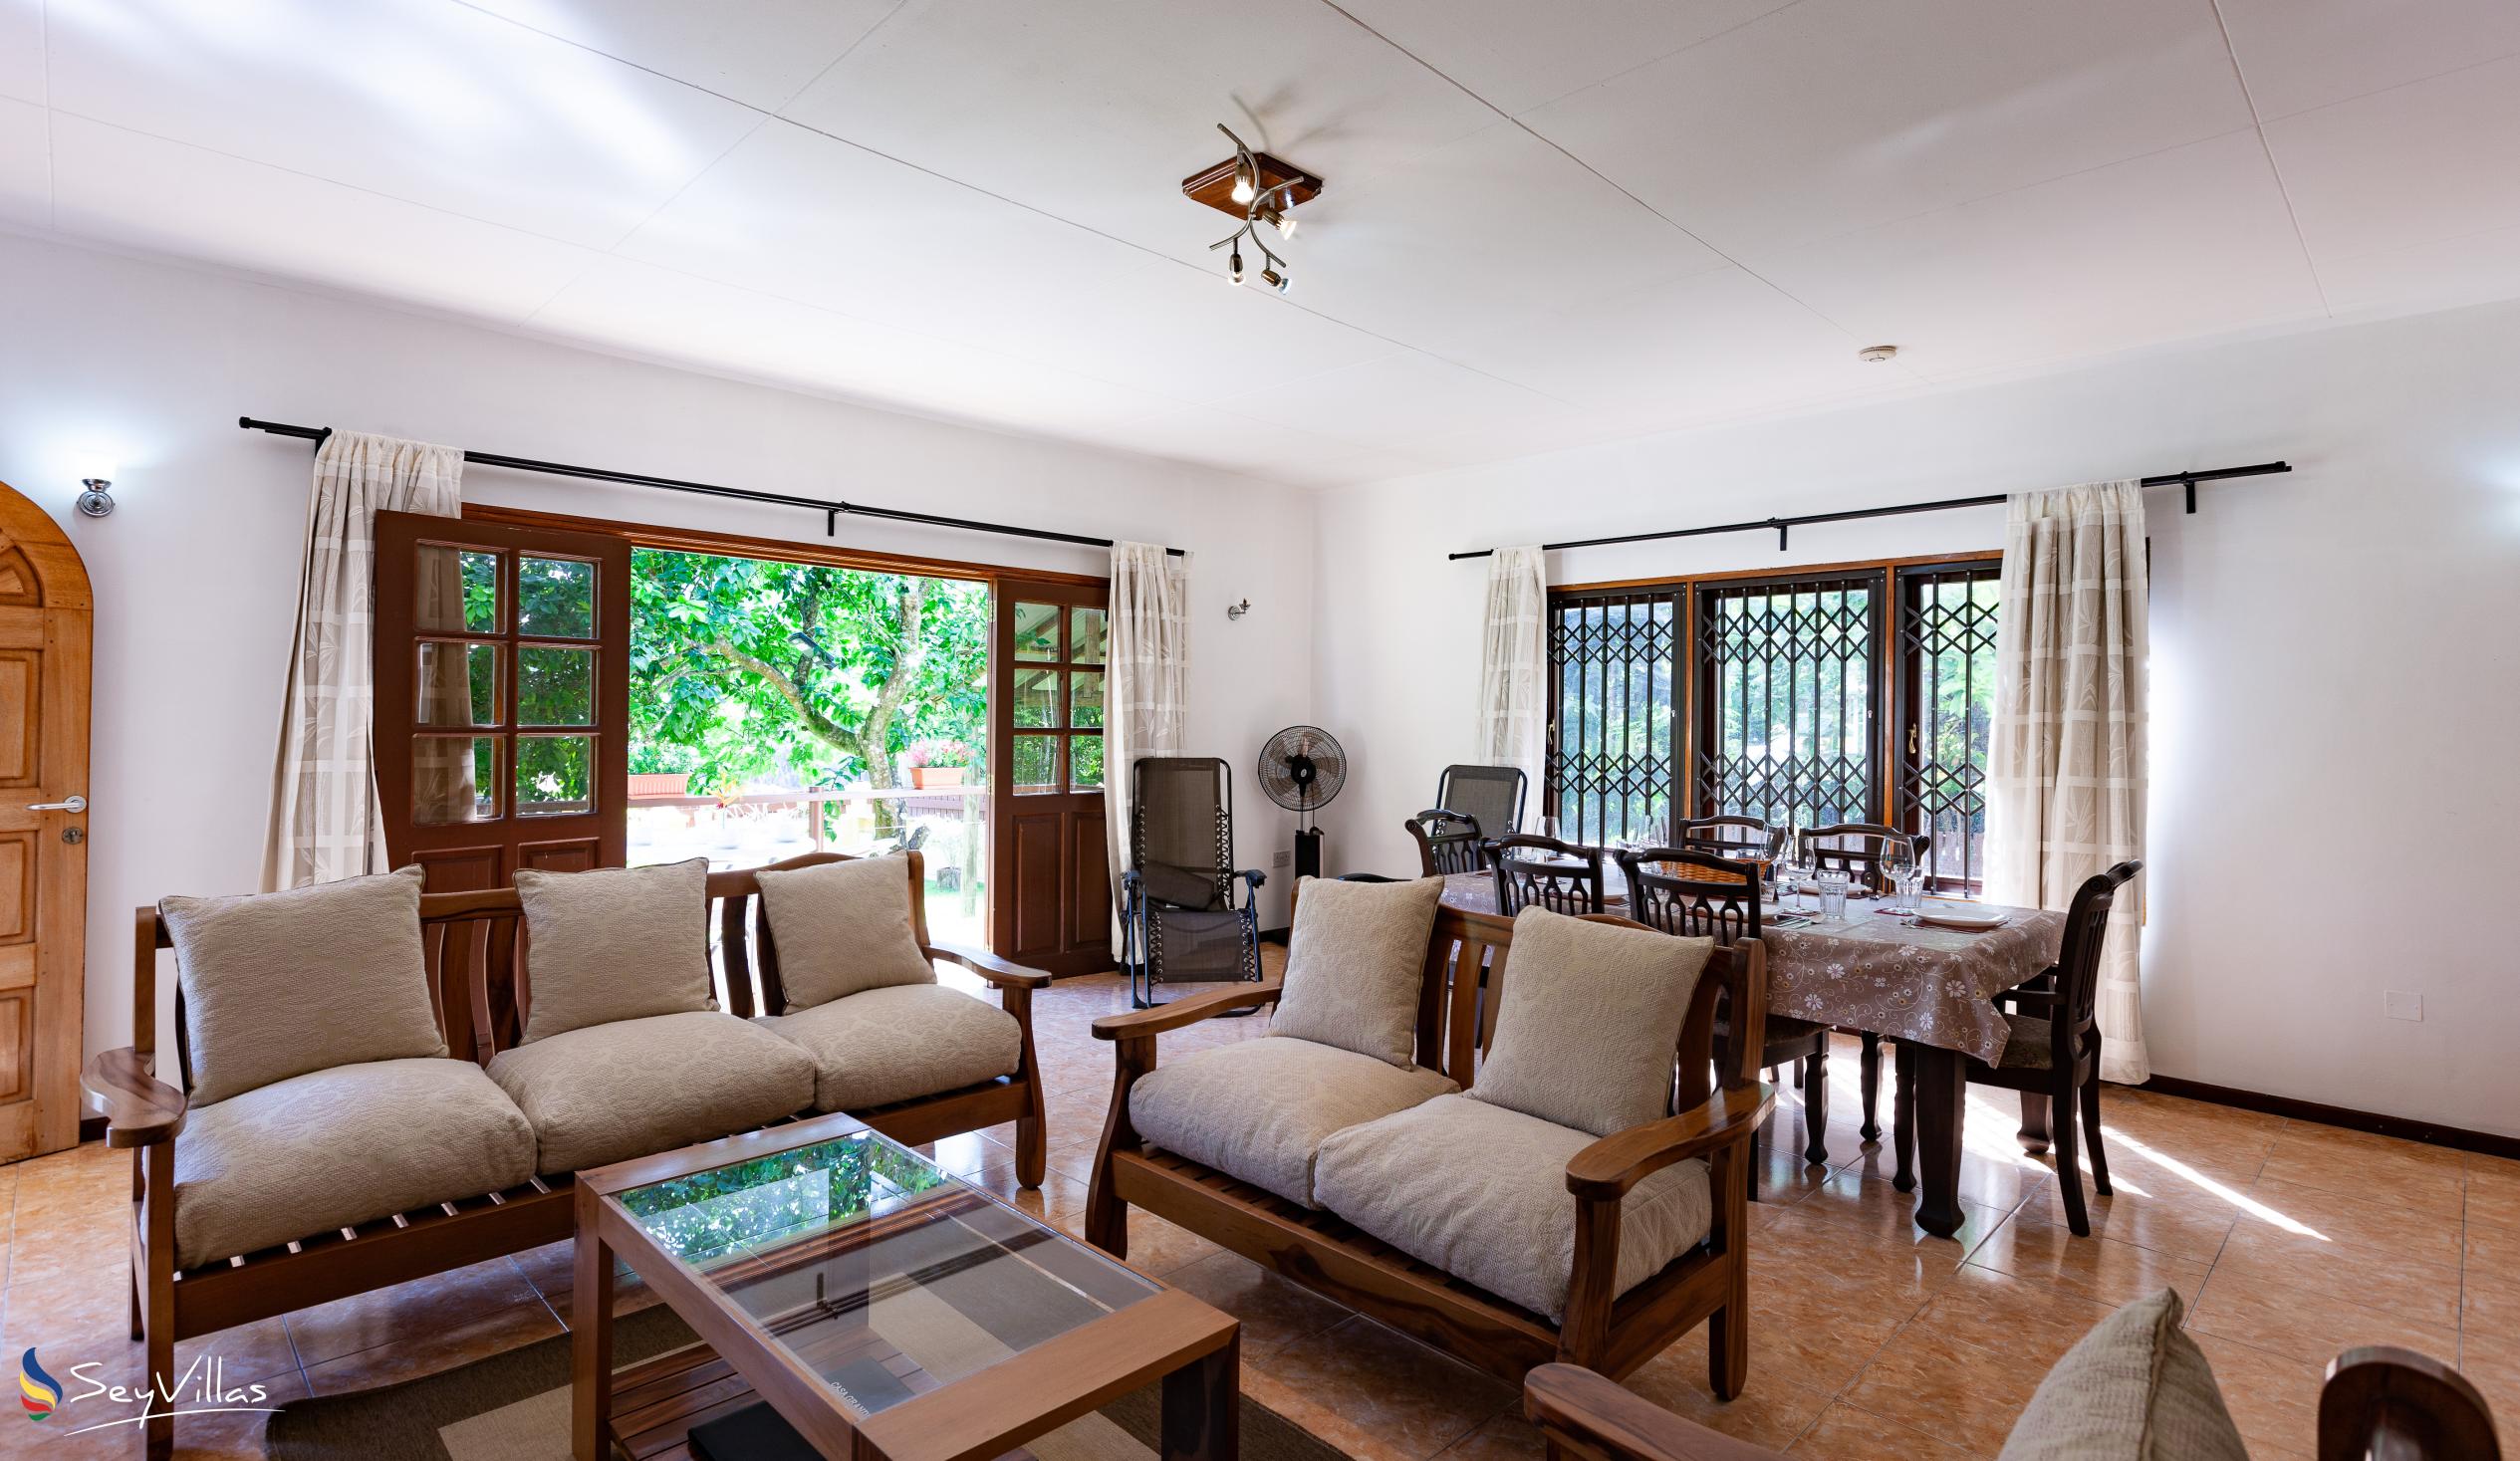 Photo 31: La Casa Grande - Indoor area - Praslin (Seychelles)